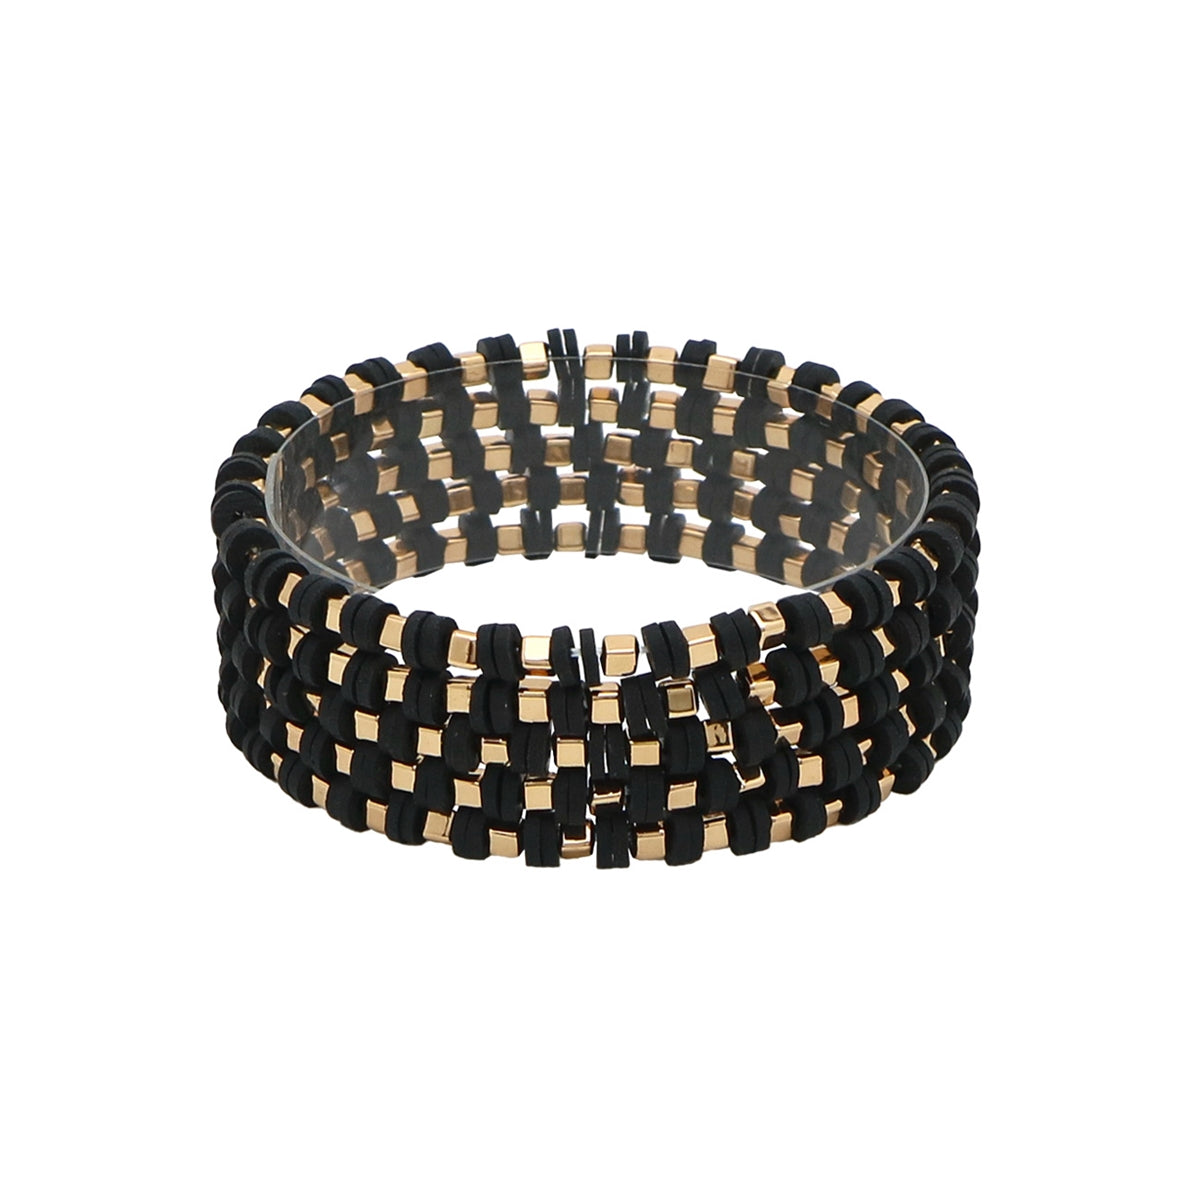 Rubber & Gold Square Bracelets-Black-Set of 5